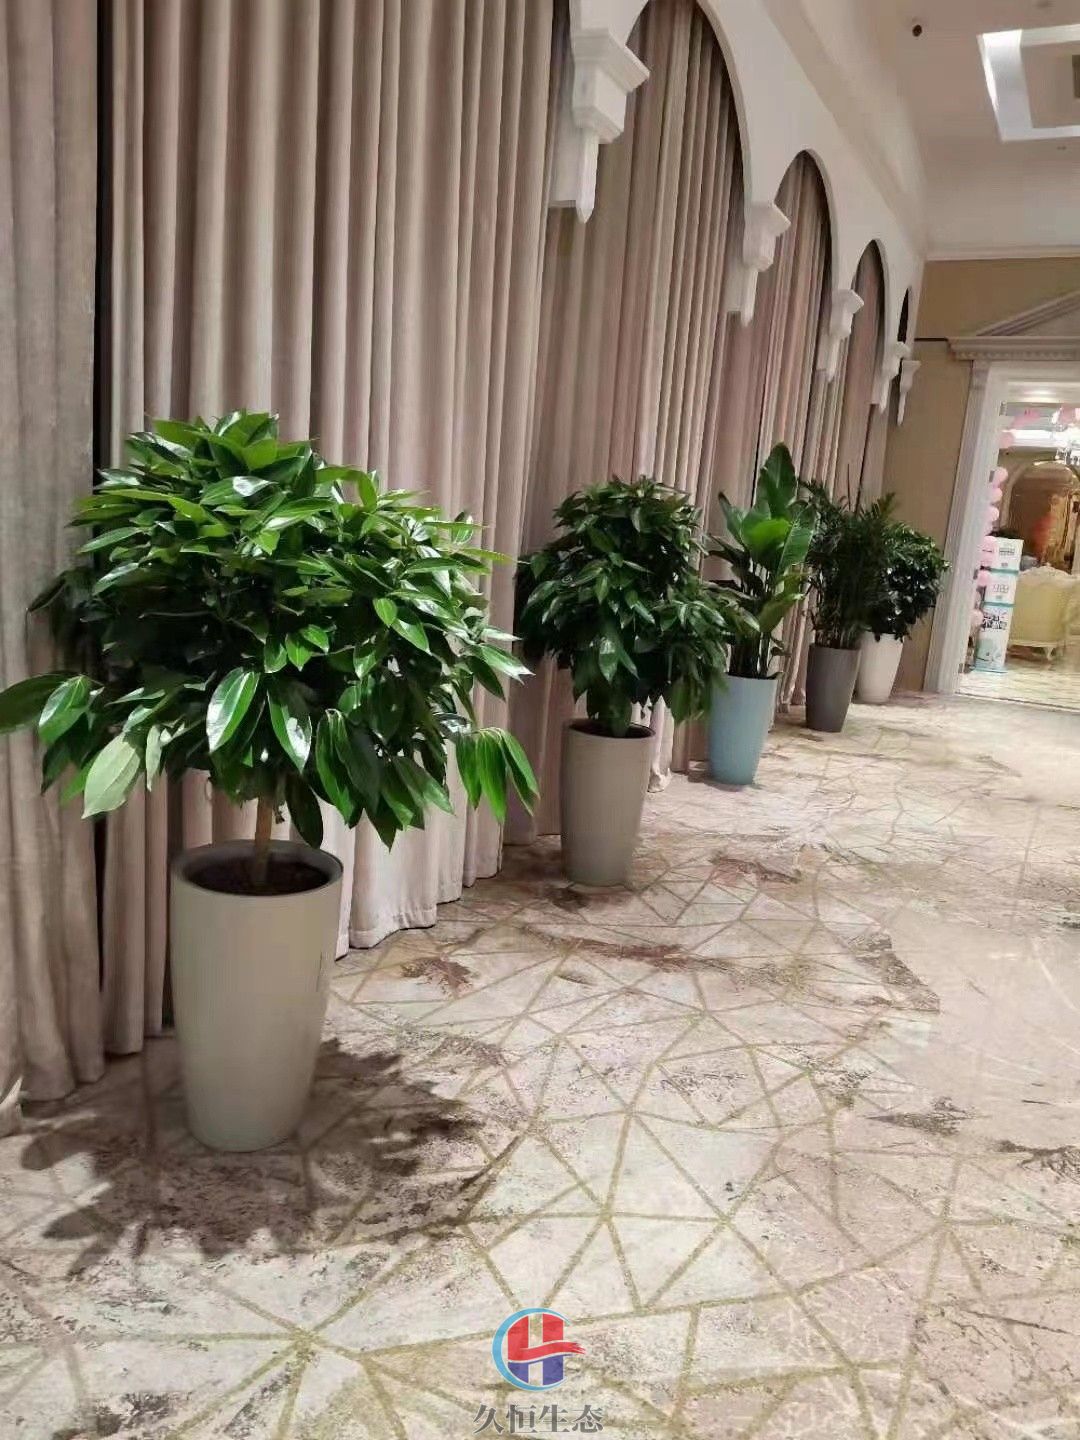 余姚酒店走廊花卉绿植摆放